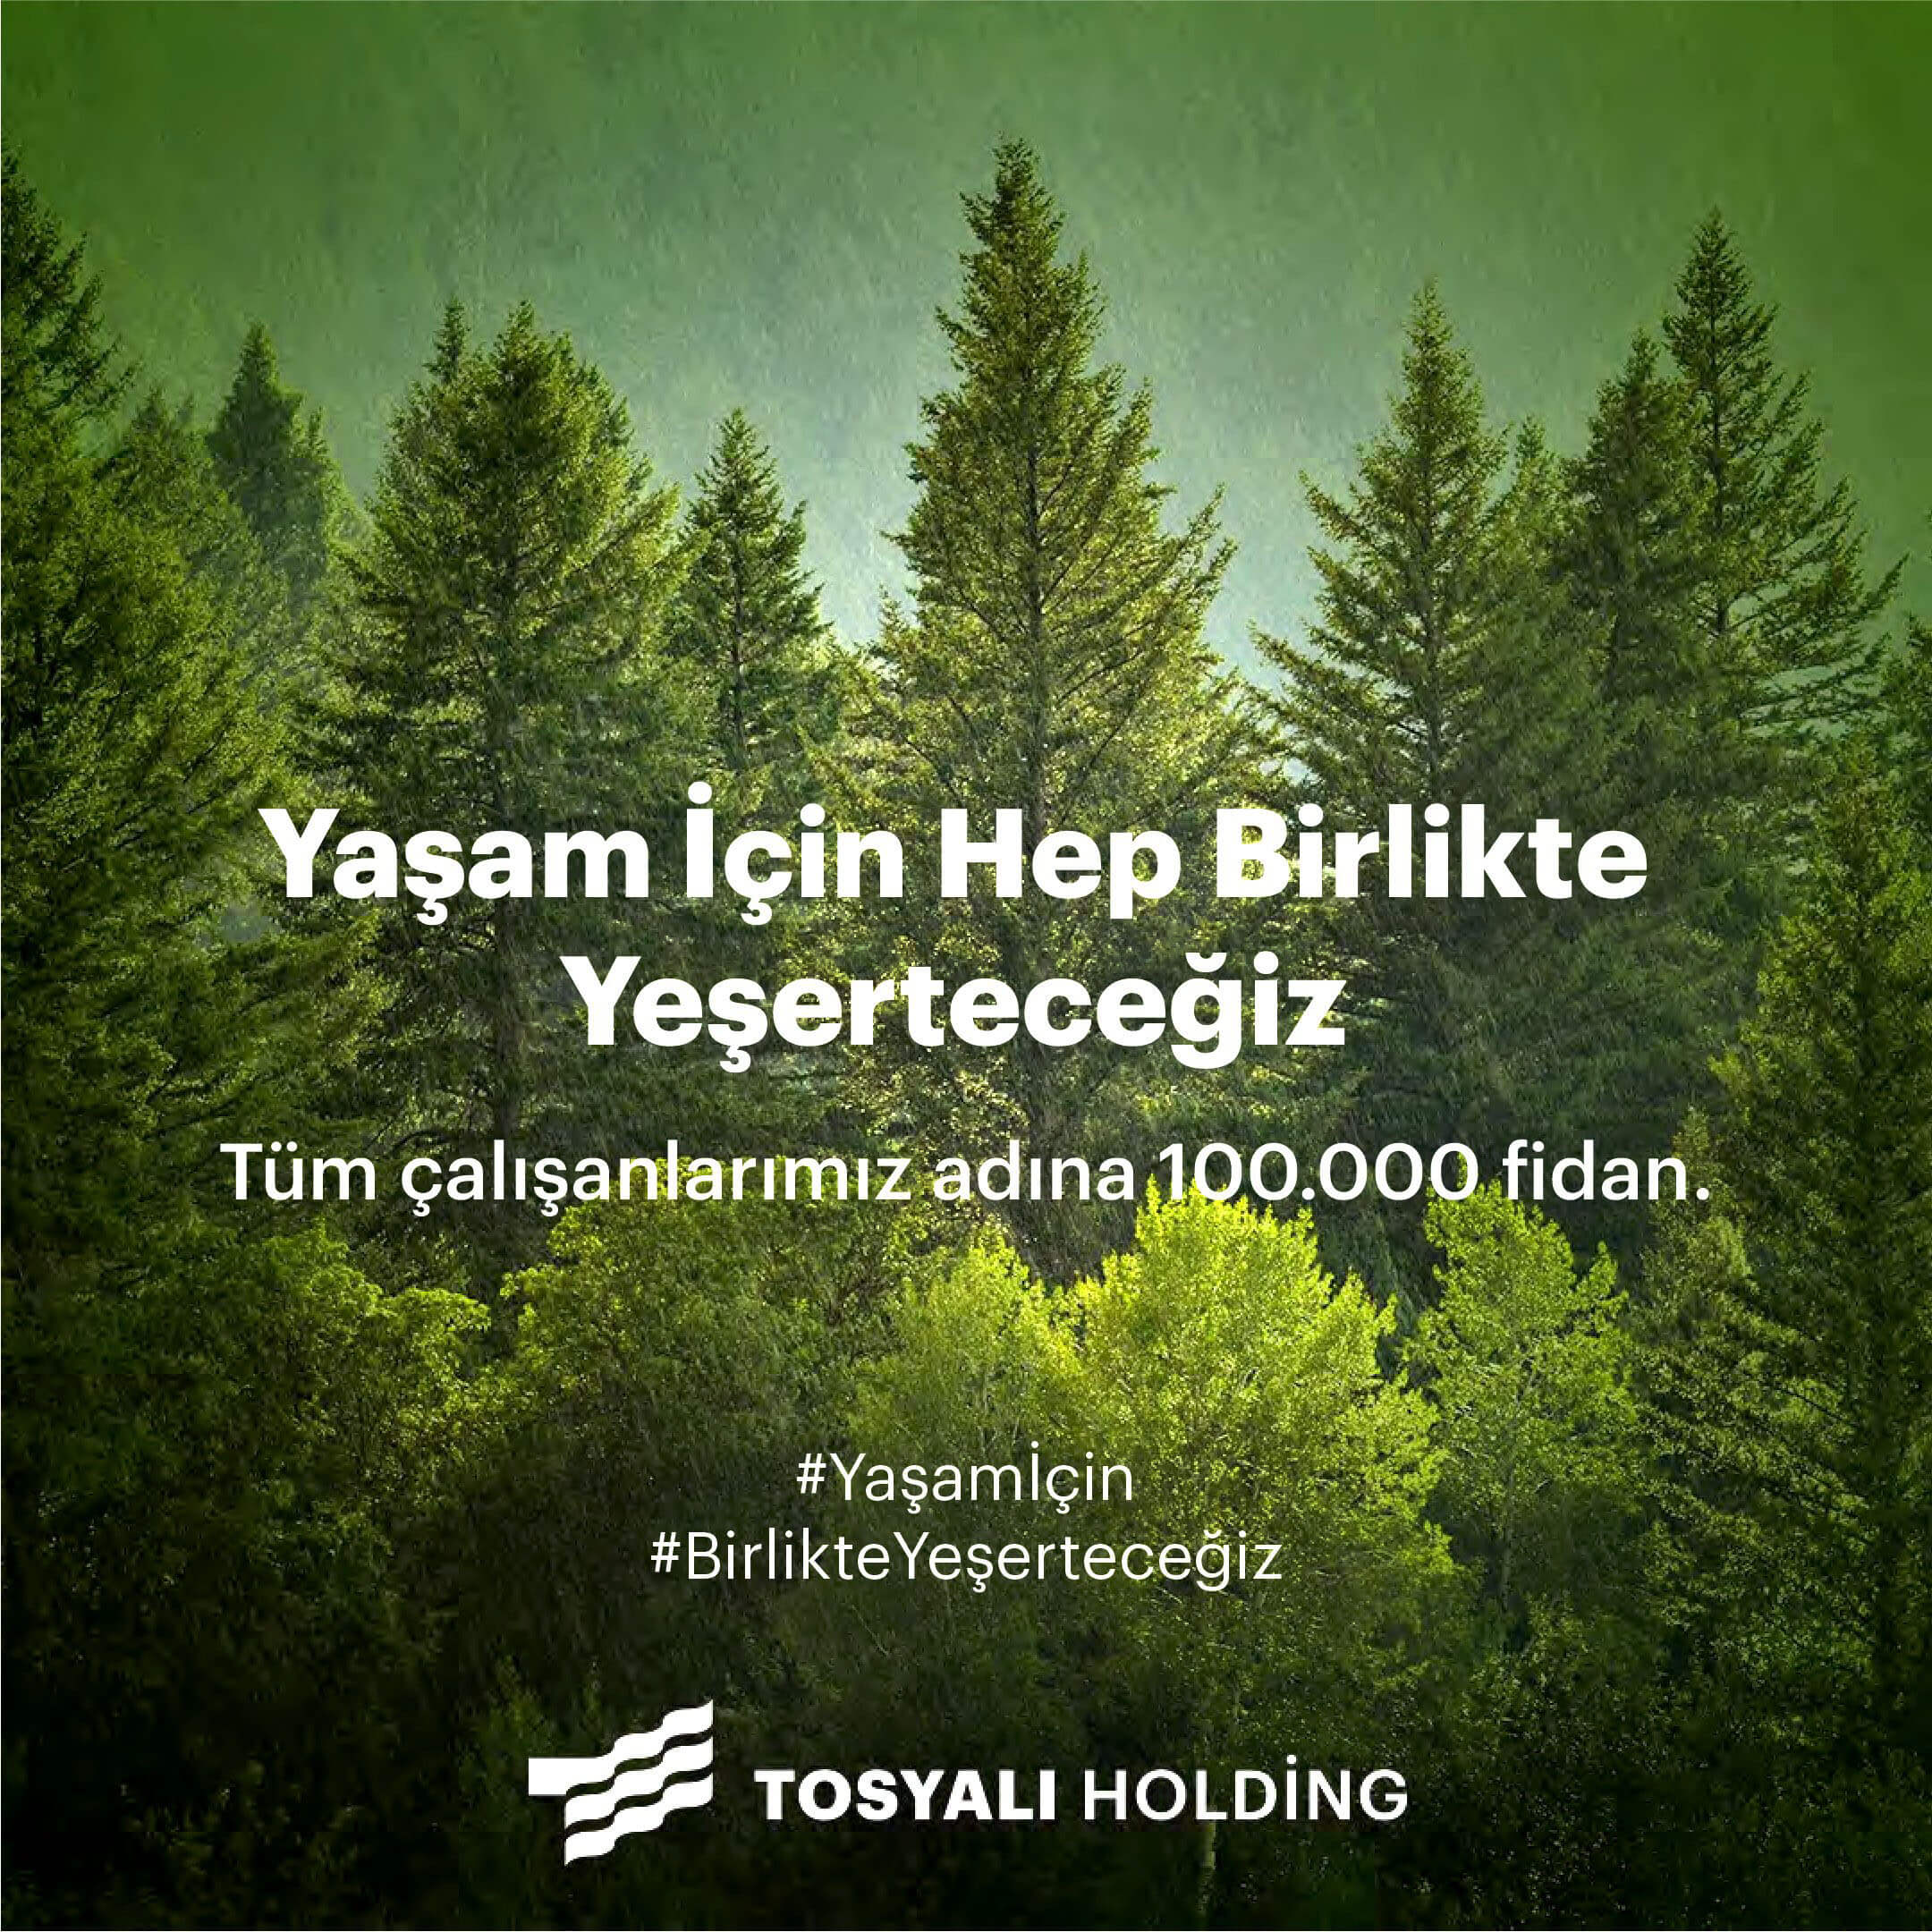 TOSYALI HOLDİNG 100.000 FİDAN DİKİYOR!